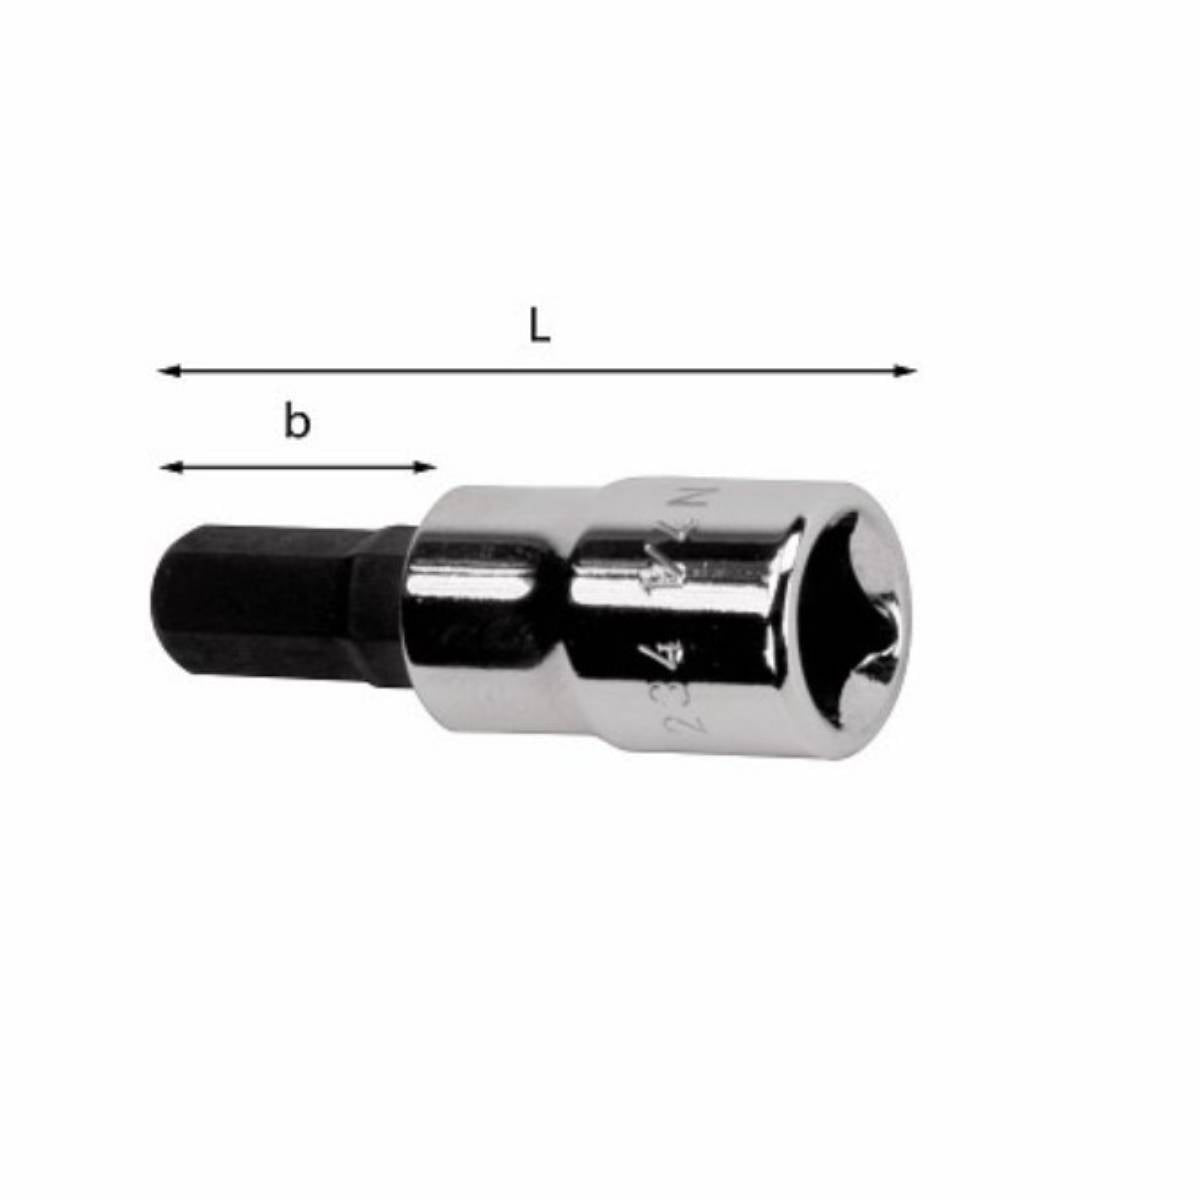 Socket wrench for hex socket screws - 234 1/2N - Usag